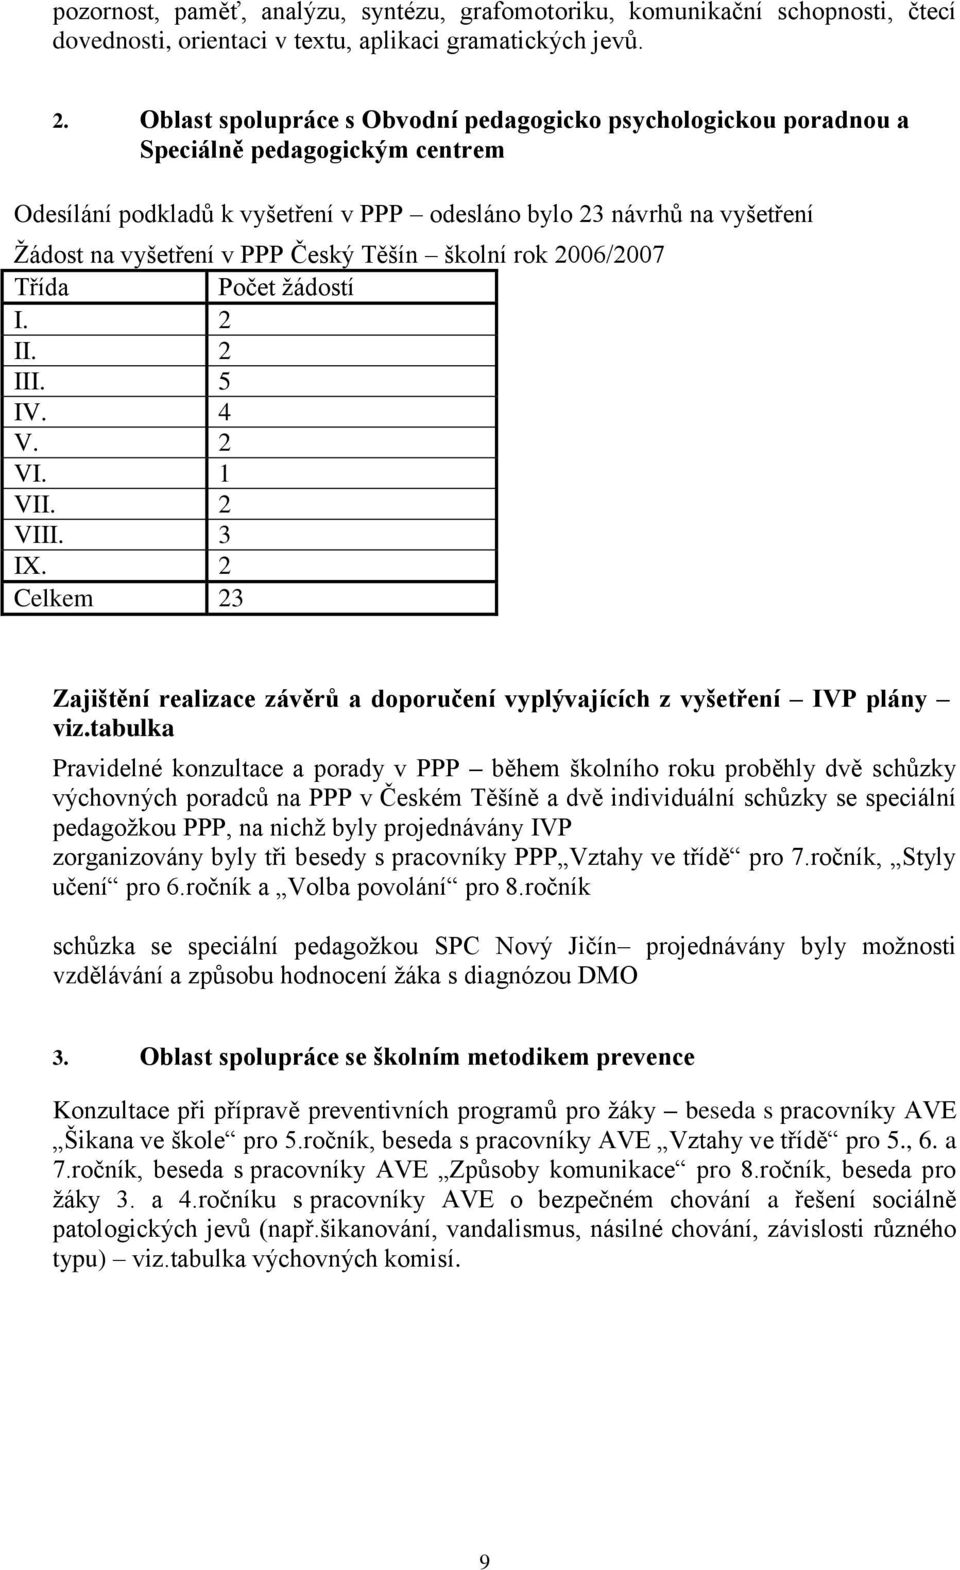 Český Těšín školní rok 2006/2007 Třída Počet ţádostí I. 2 II. 2 III. 5 IV. 4 V. 2 VI. 1 VII. 2 VIII. 3 IX. 2 Celkem 23 Zajištění realizace závěrů a doporučení vyplývajících z vyšetření IVP plány viz.